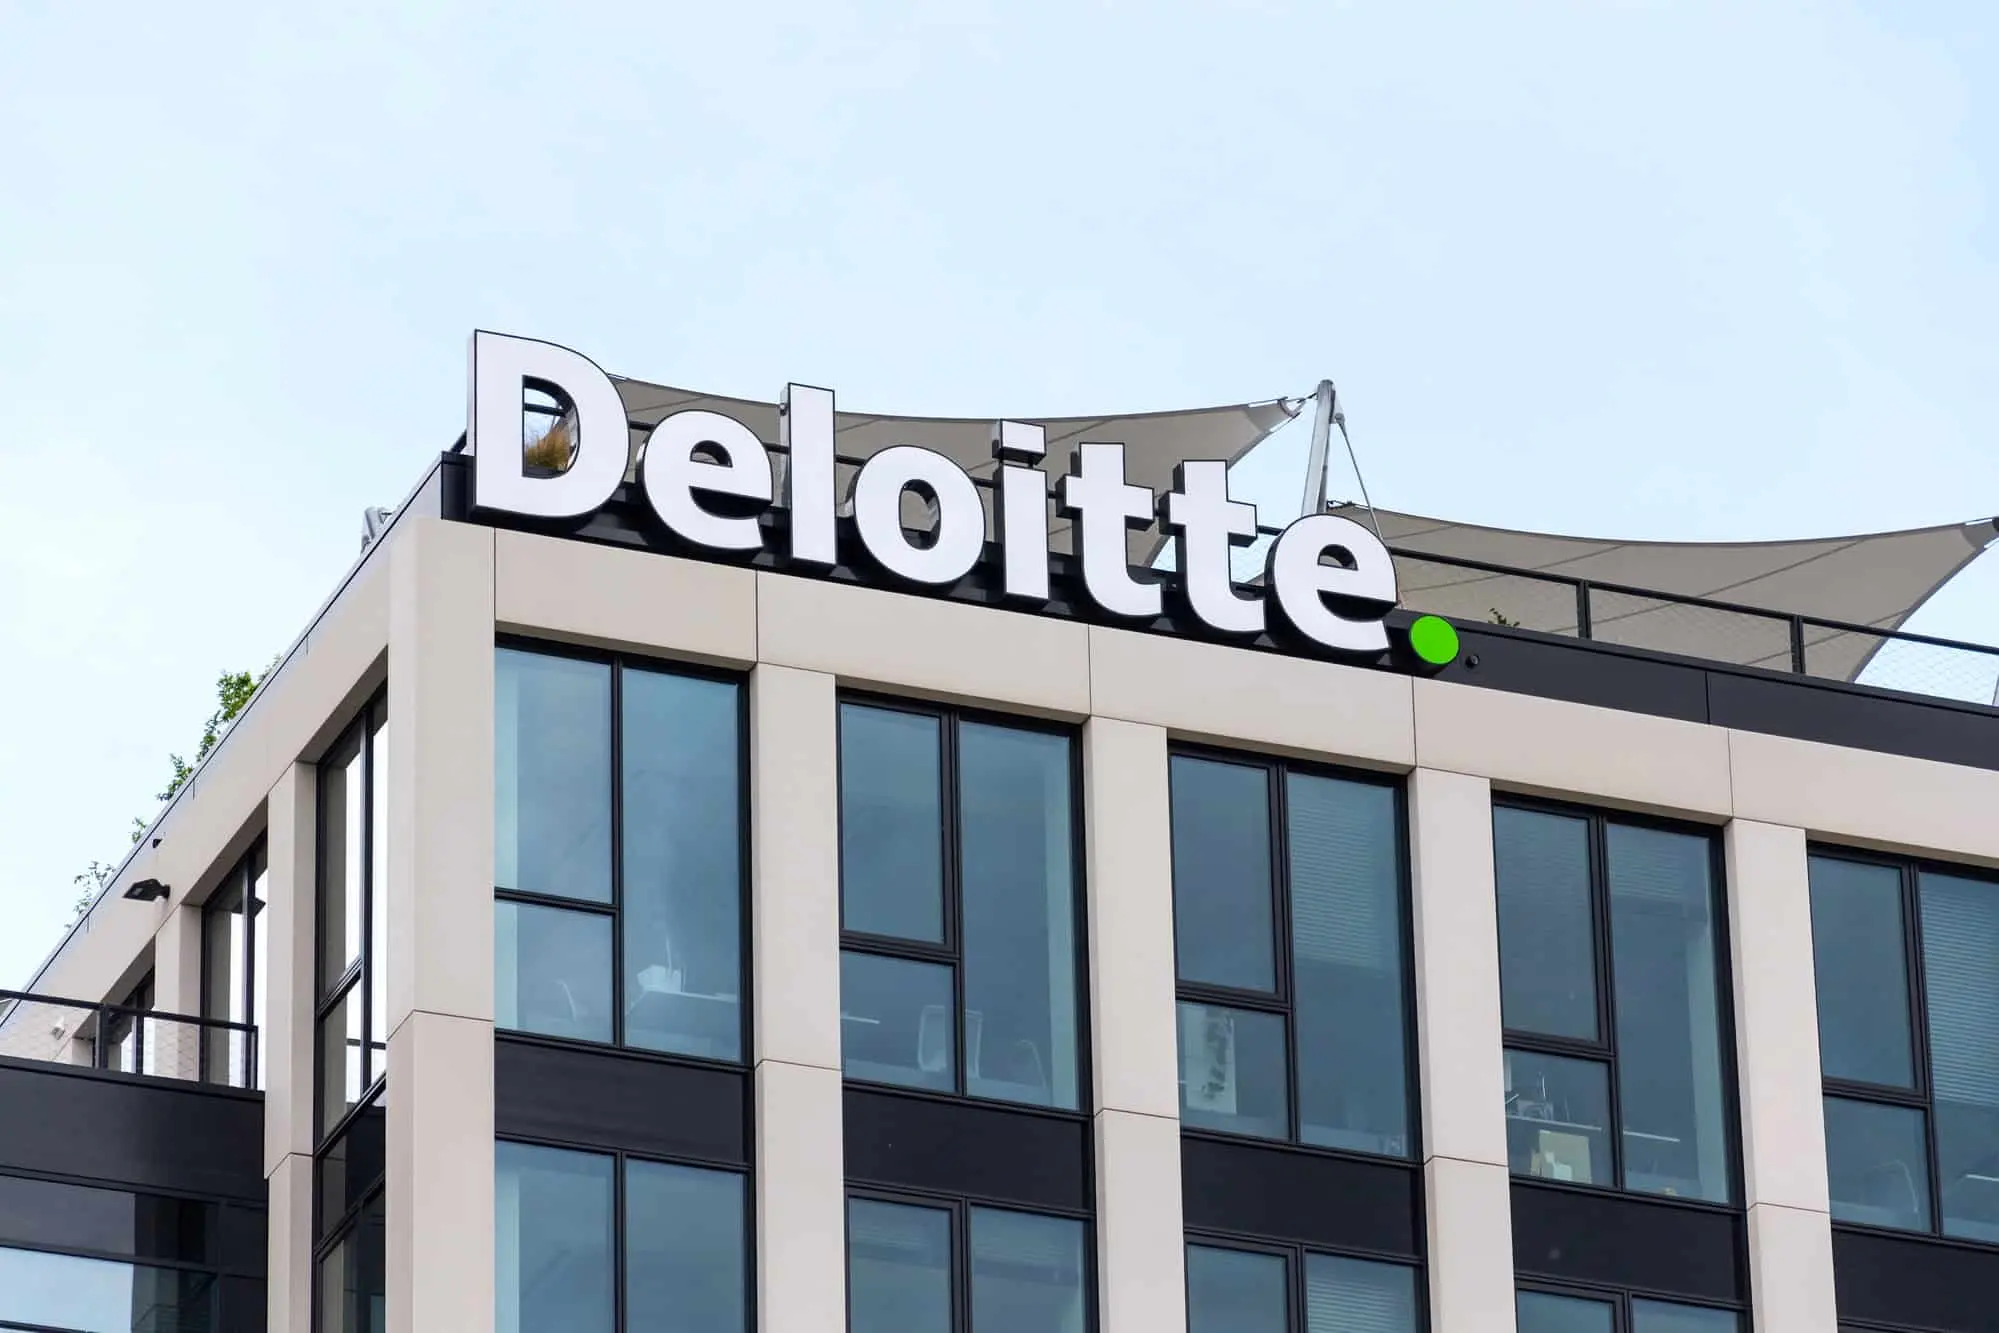 Deloitte Career Opportunity